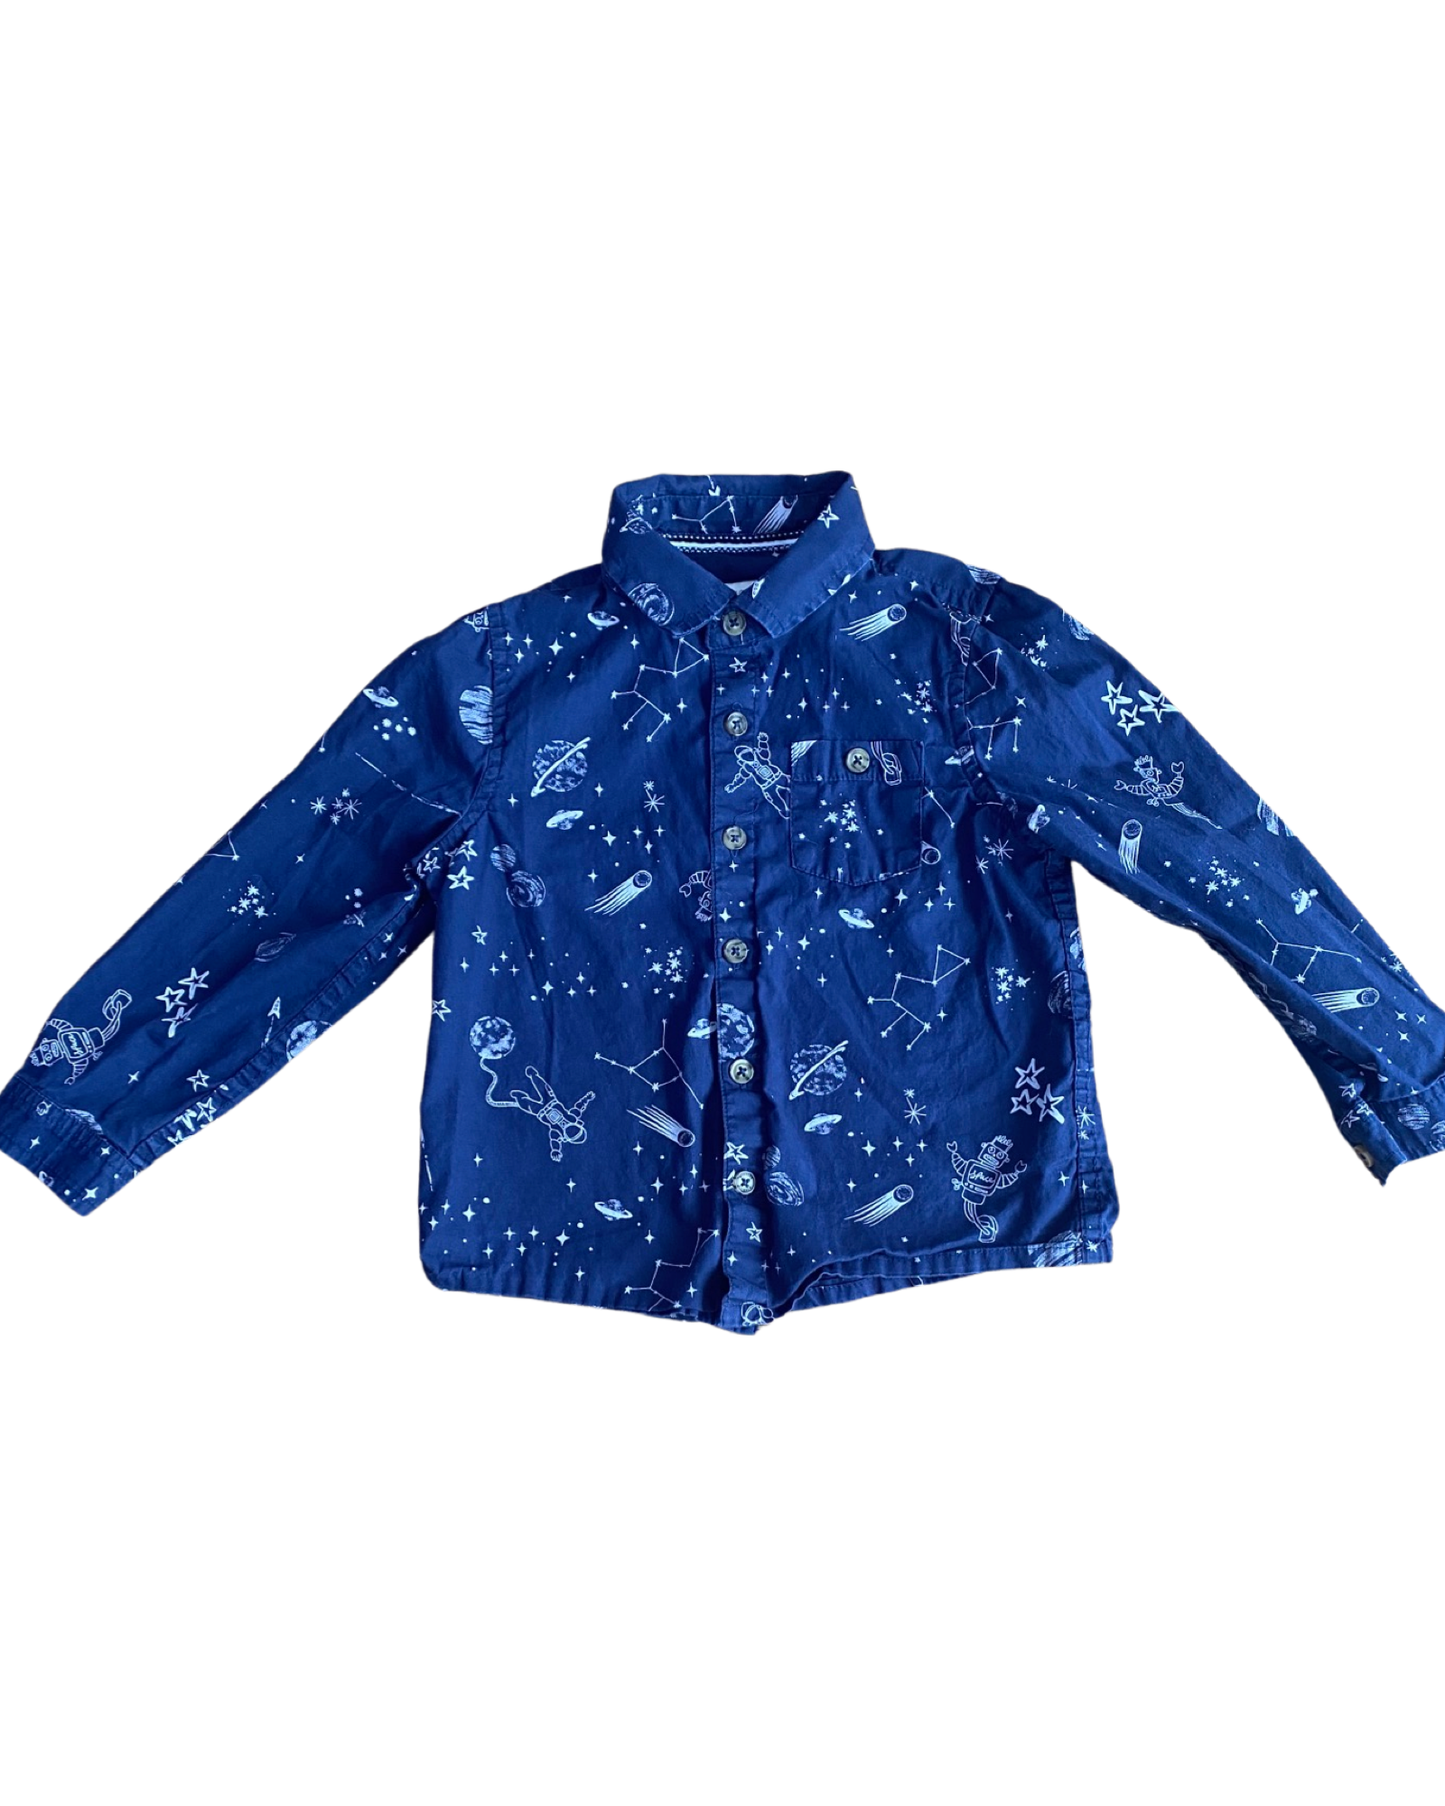 Monsoon space print navy cotton shirt (3-4yrs)